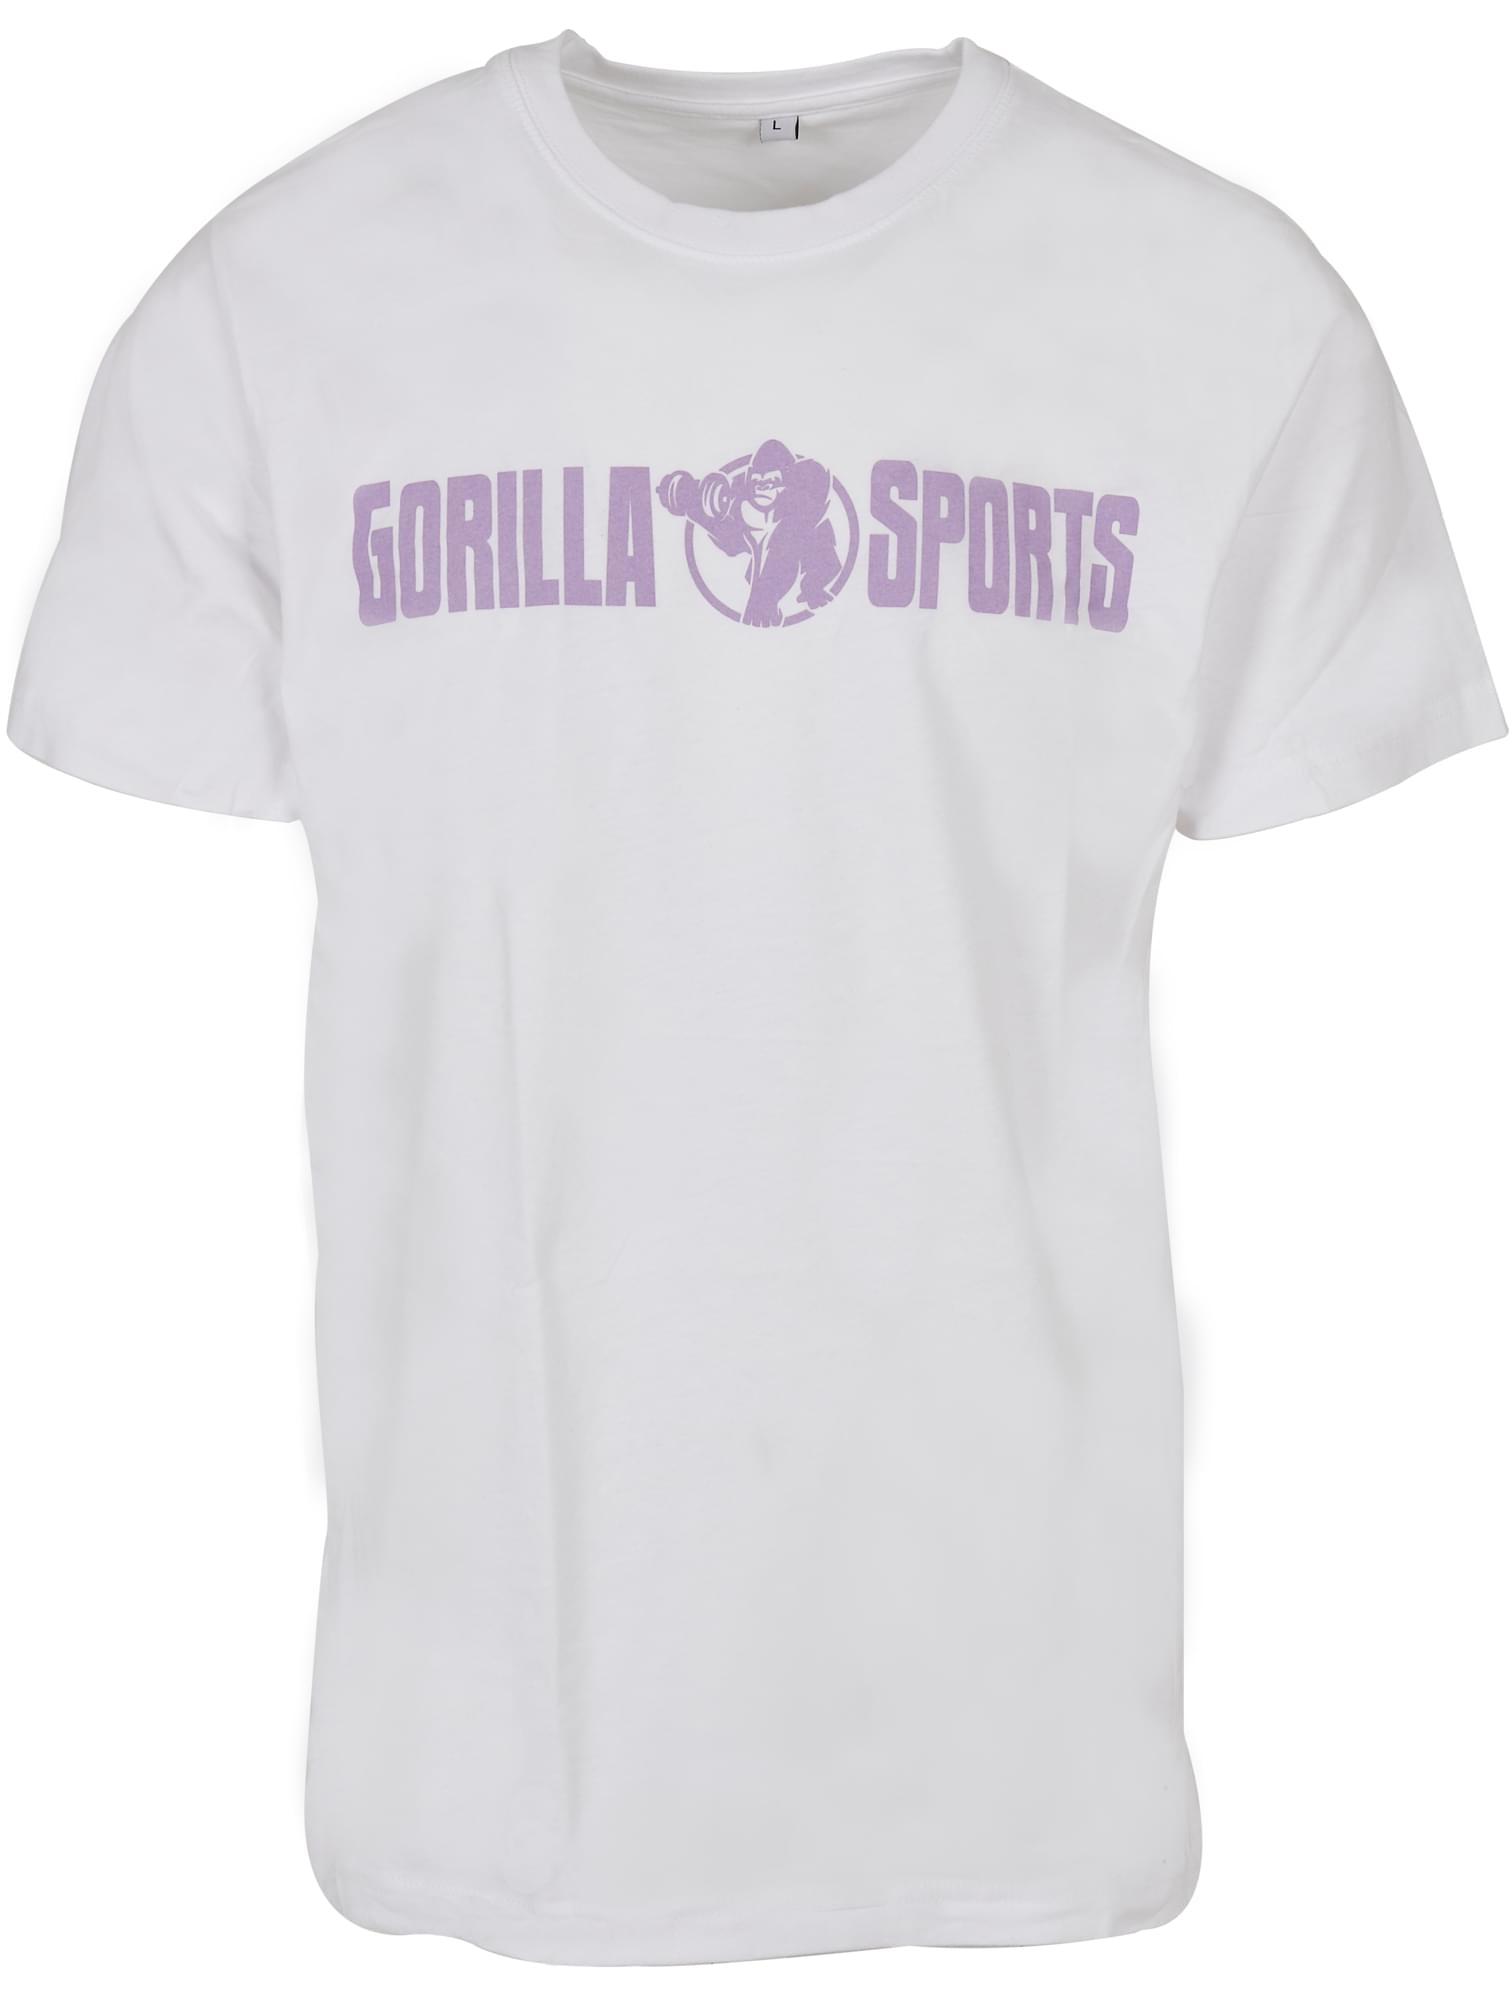 T-shirt Ã col rond - taille L - coloris blanc/violet